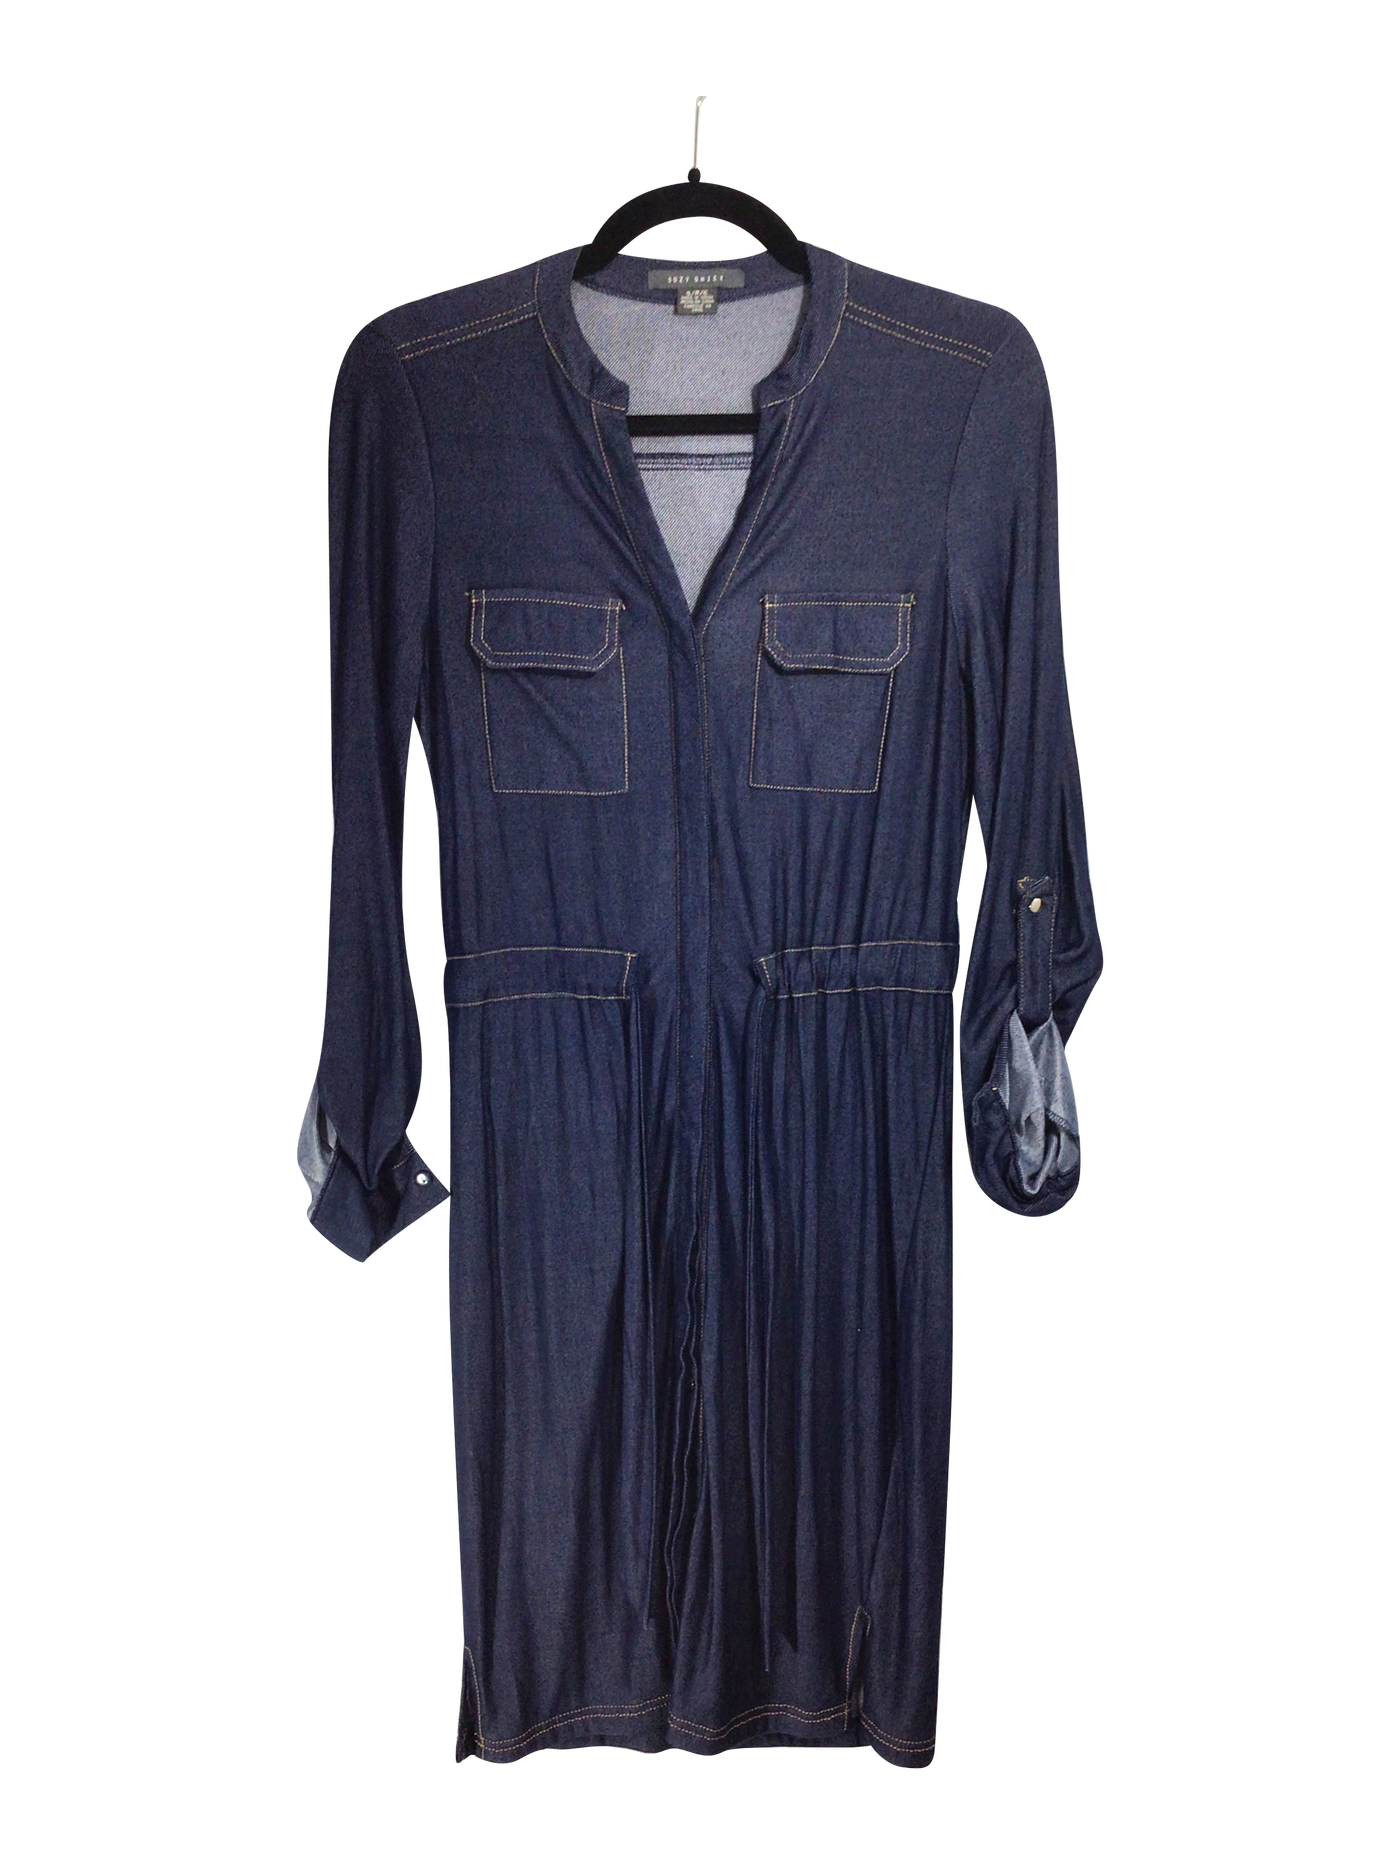 SUZY SHIER Women Drop Waist Dresses Regular fit in Blue - Size S | 14.3 $ KOOP